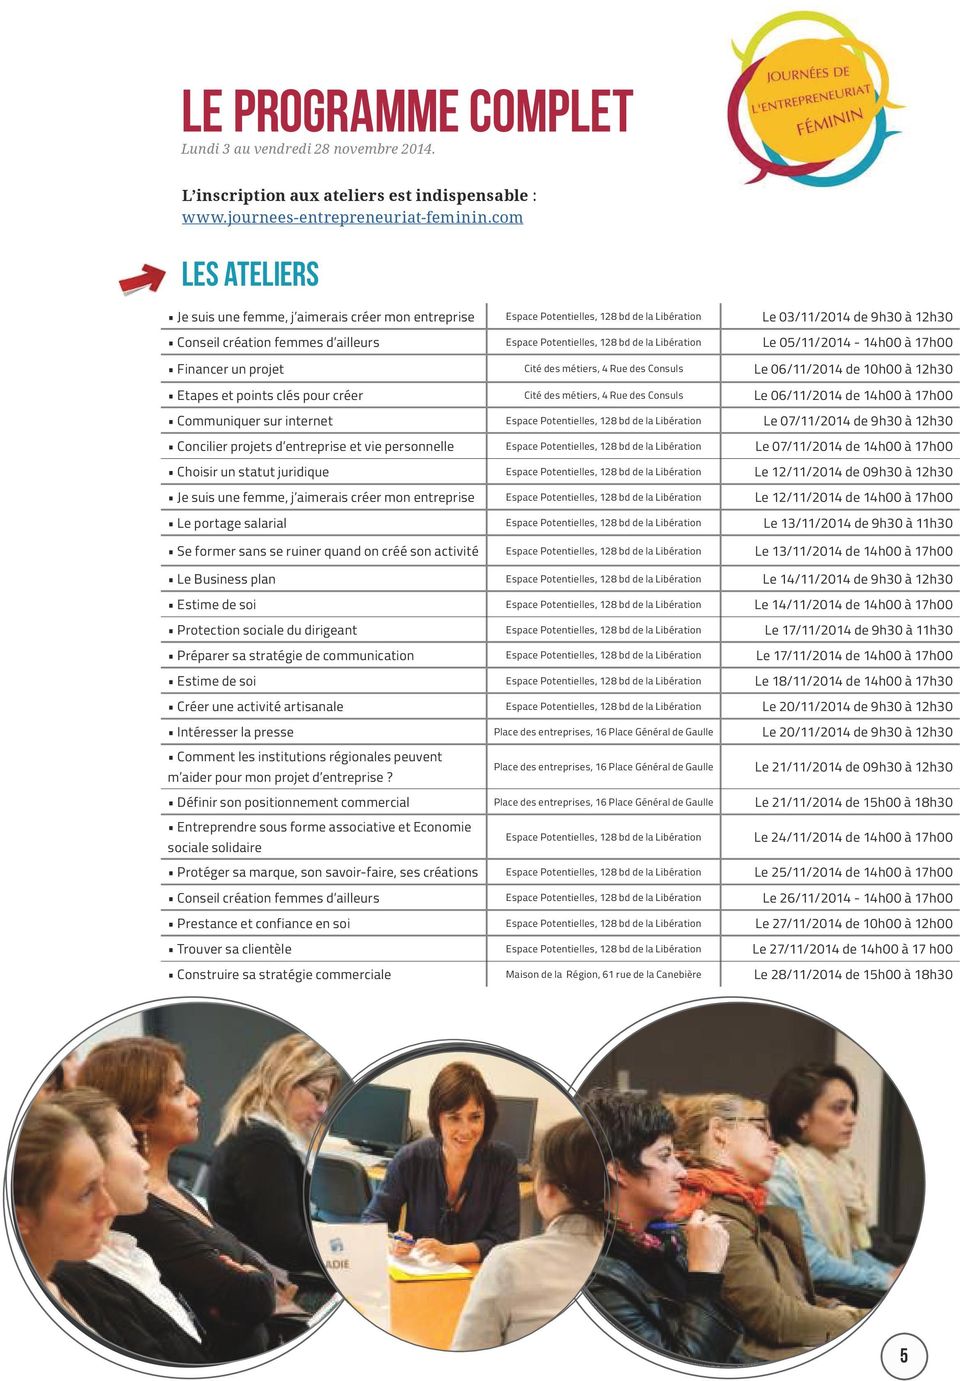 128 bd de la Libération Le 05/11/2014-14h00 à 17h00 Financer un projet Cité des métiers, 4 Rue des Consuls Le 06/11/2014 de 10h00 à 12h30 Etapes et points clés pour créer Cité des métiers, 4 Rue des